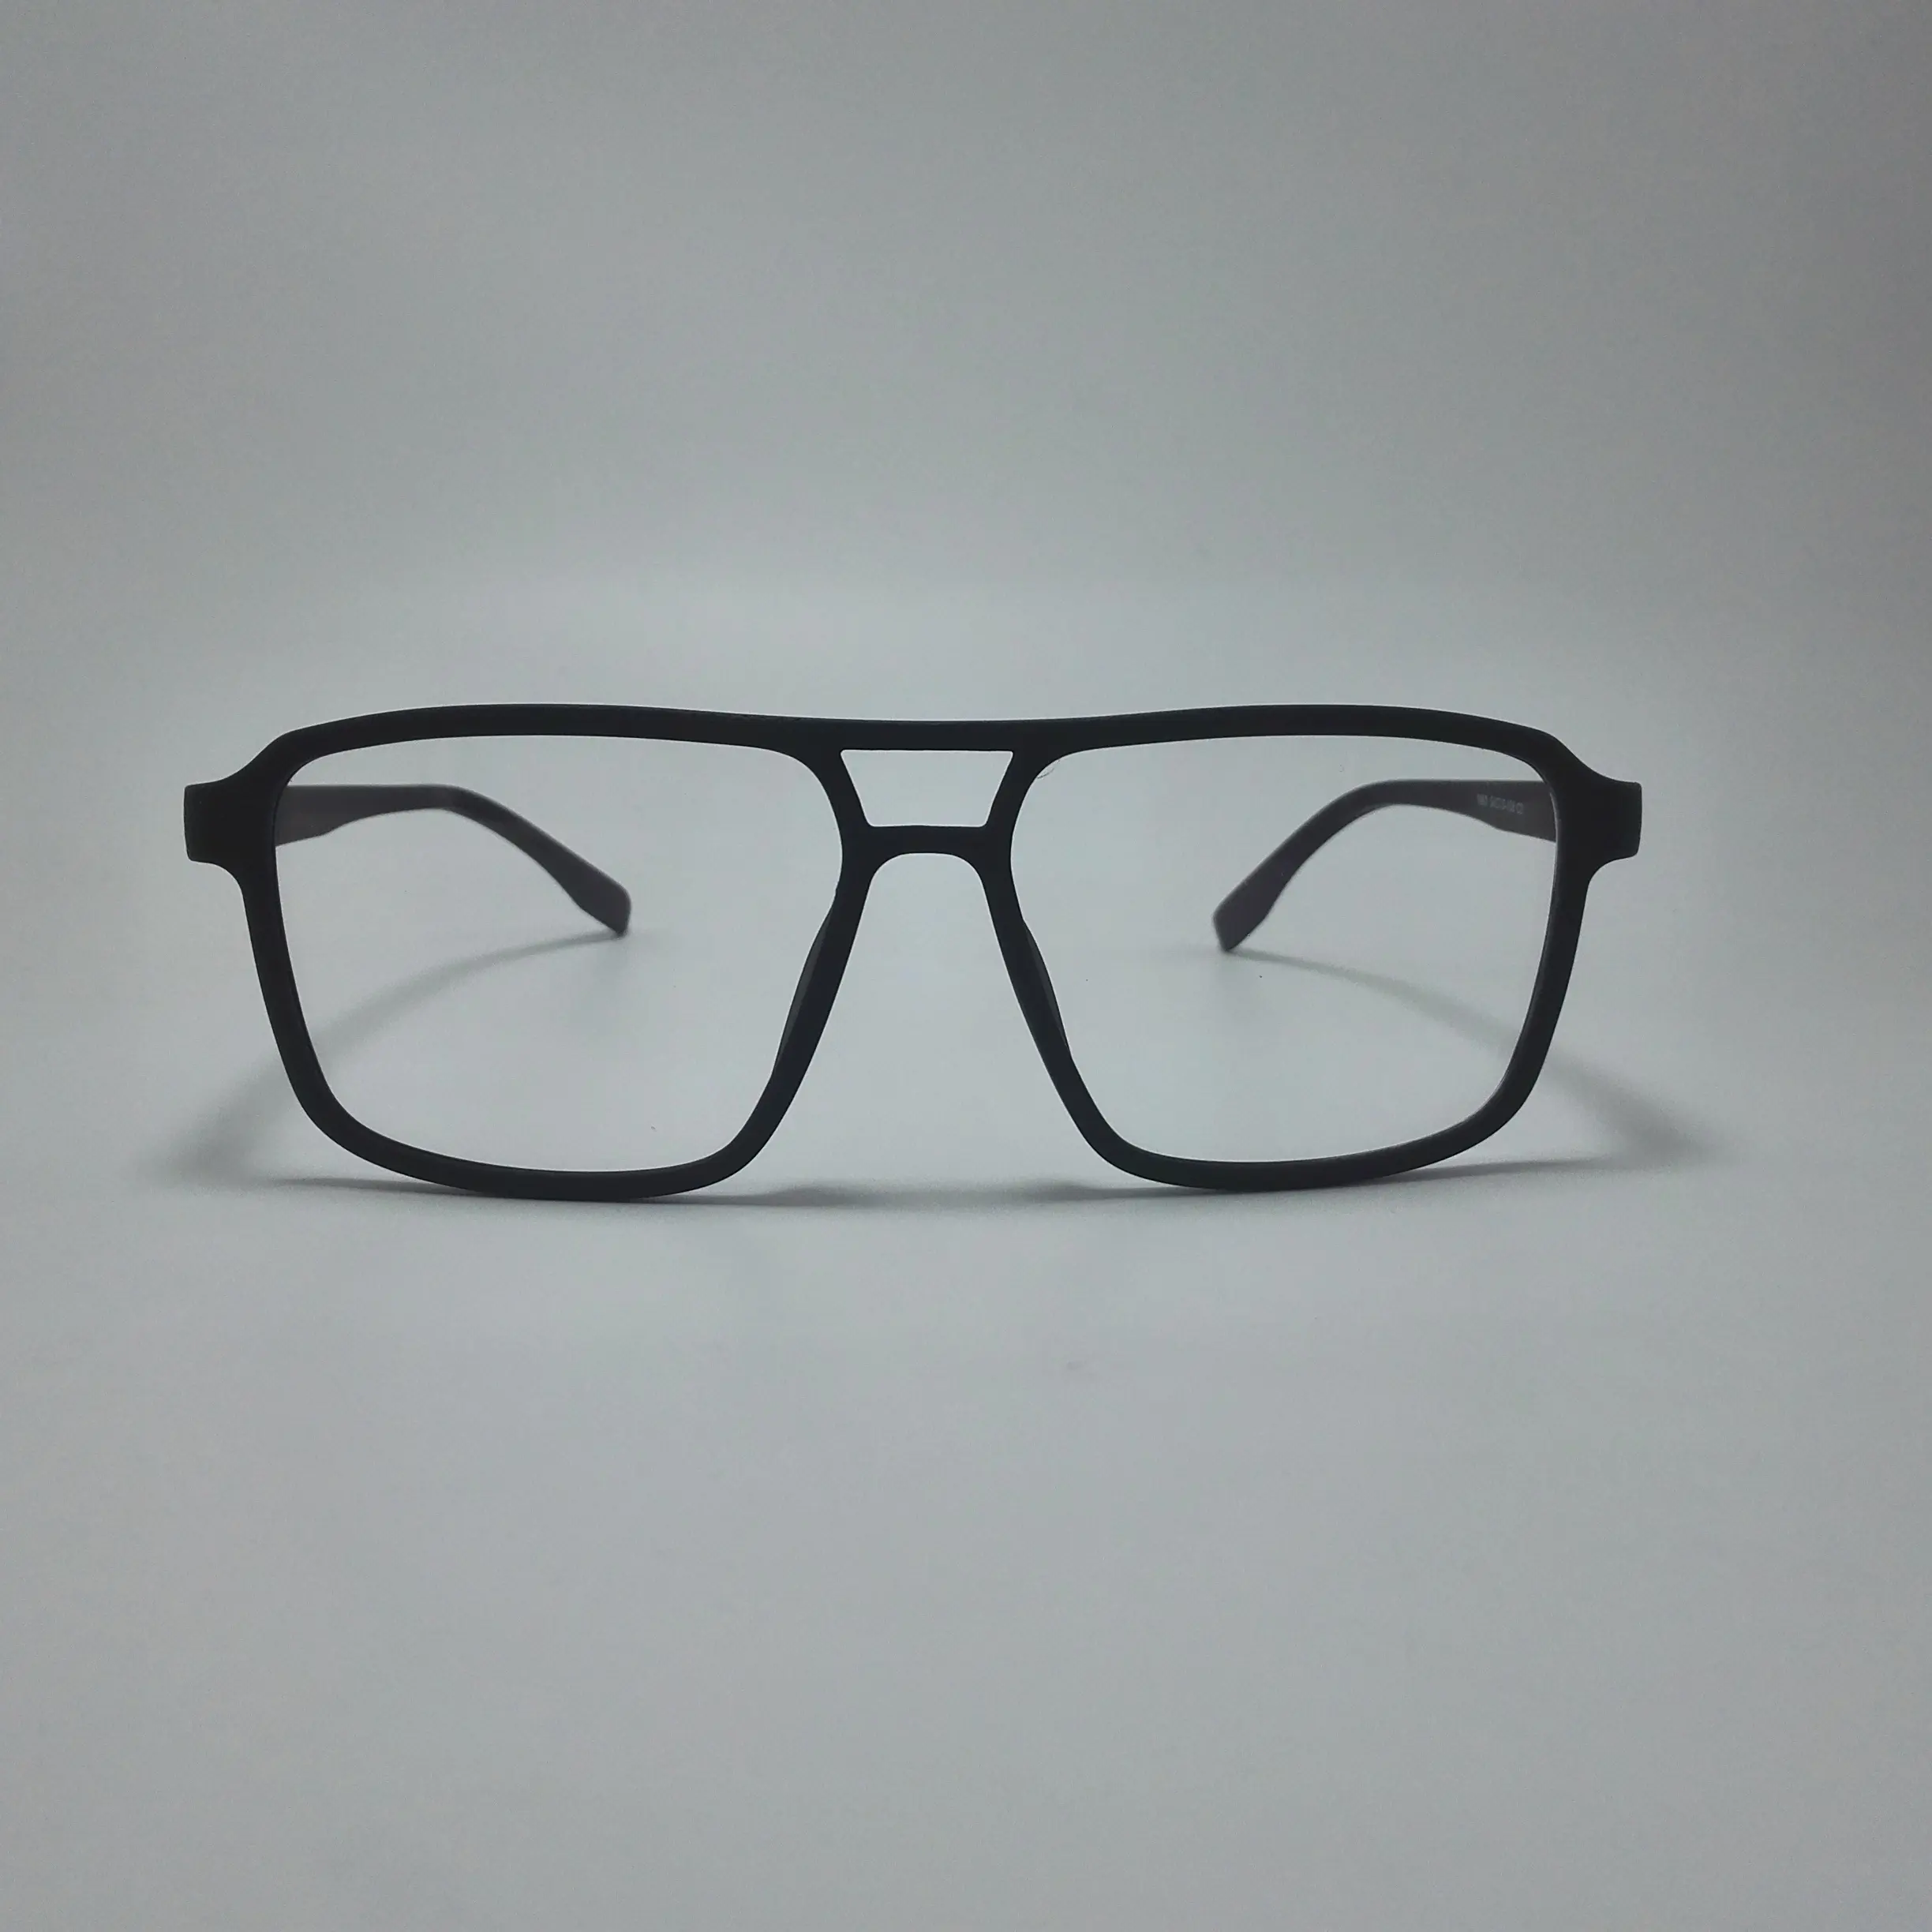 أعلى جودة نظارات أفضل البصرية نظارات الماركات خصم جميلة إطارات النظارات مكافحة الإشعاع الكمبيوتر خلات الإطار البصري